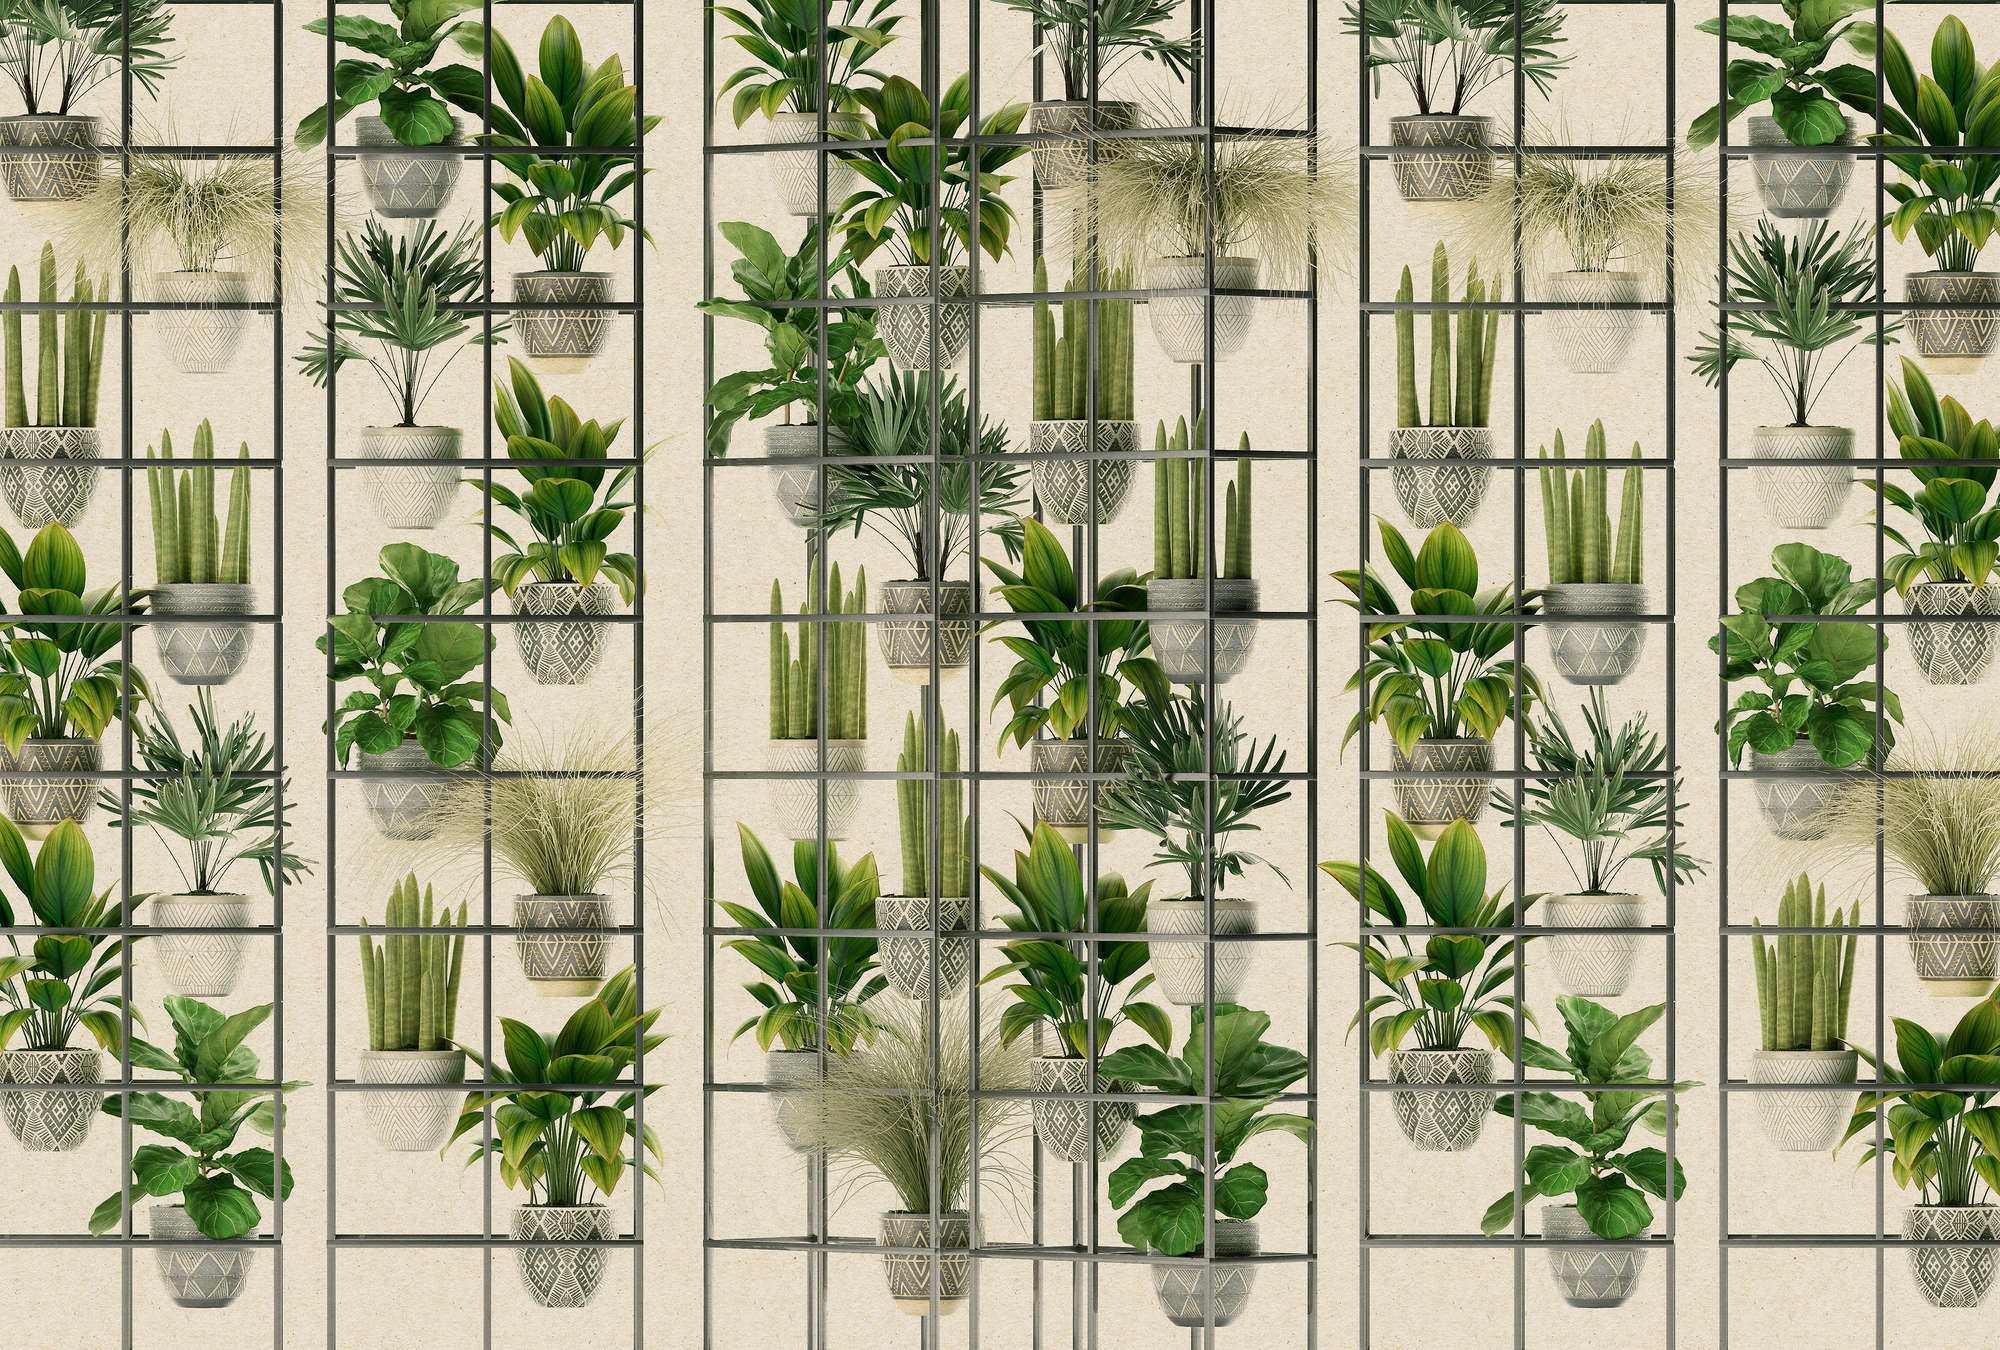             Plant Shop 2 - Fotomurali di piante moderne in verde e grigio
        